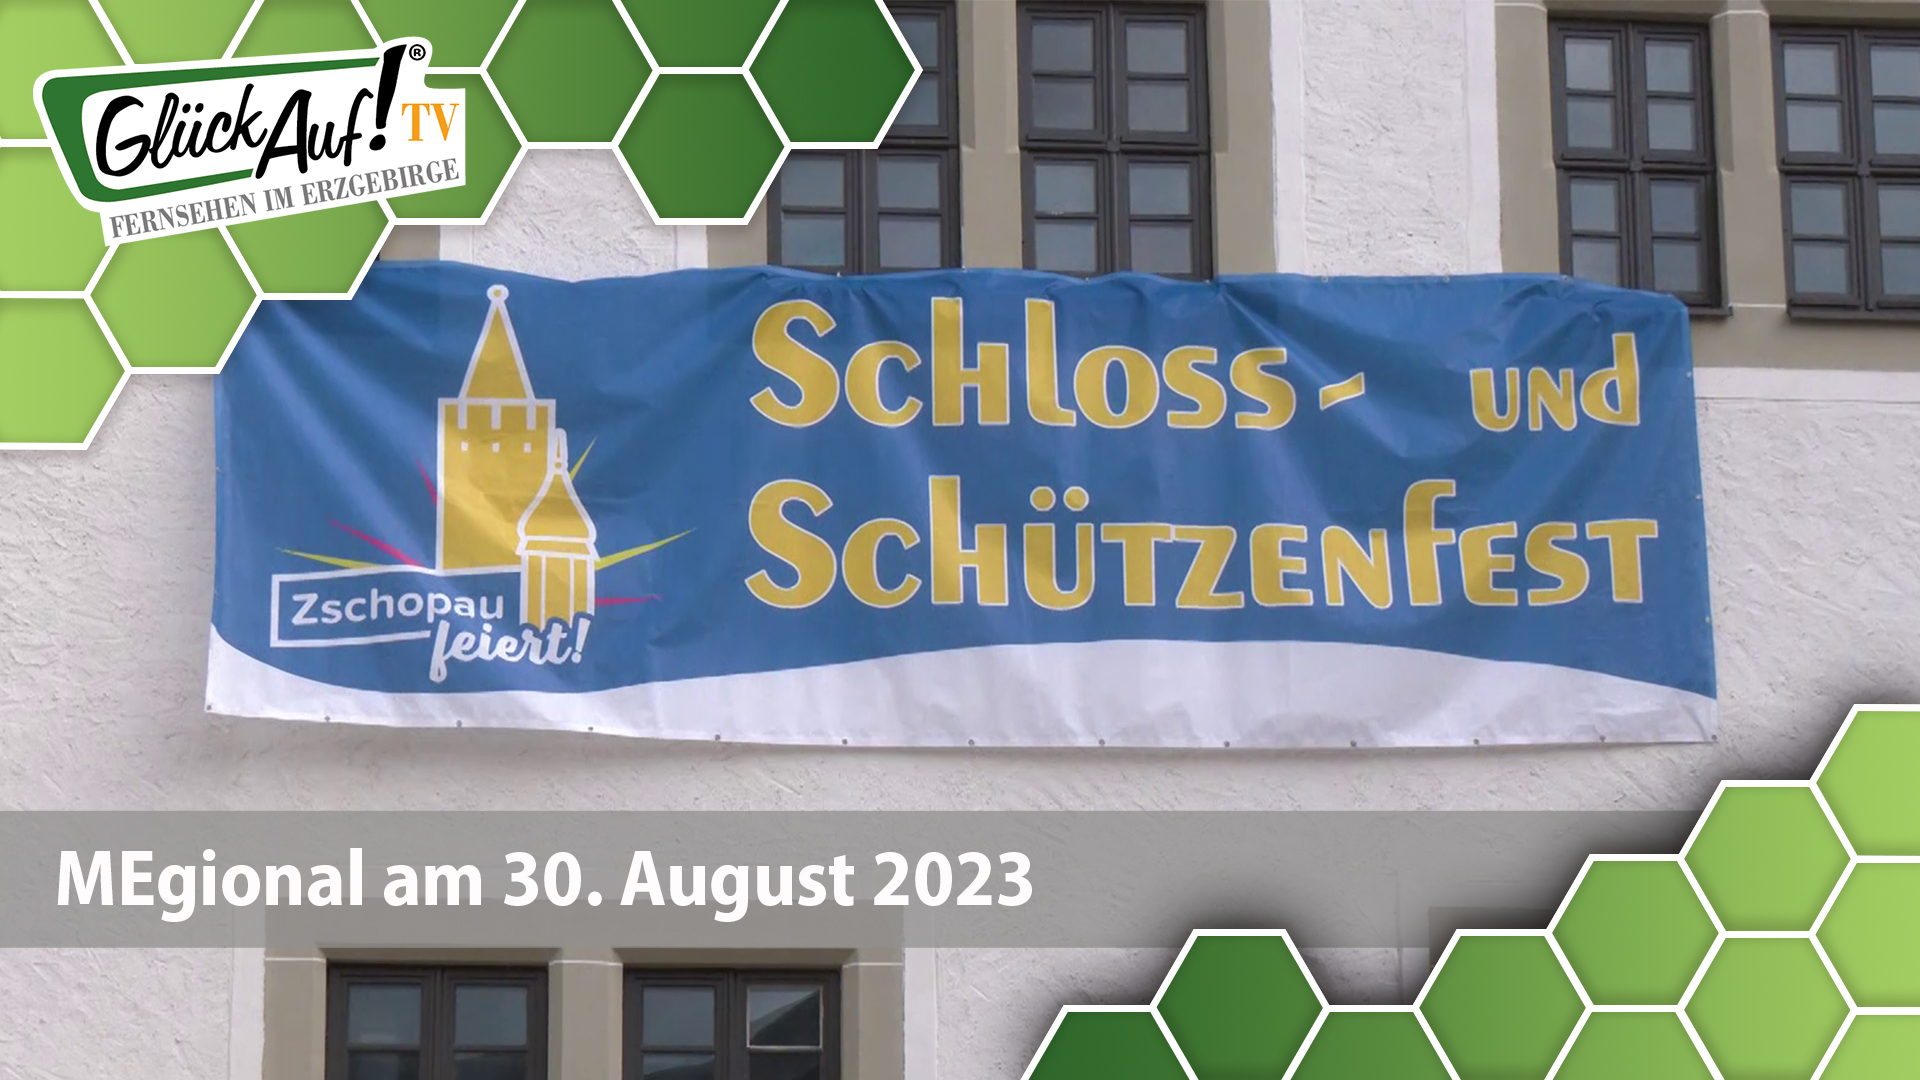 MEgional am 30. August 2023 mit dem Schloss und Schützenfest in Zschopau